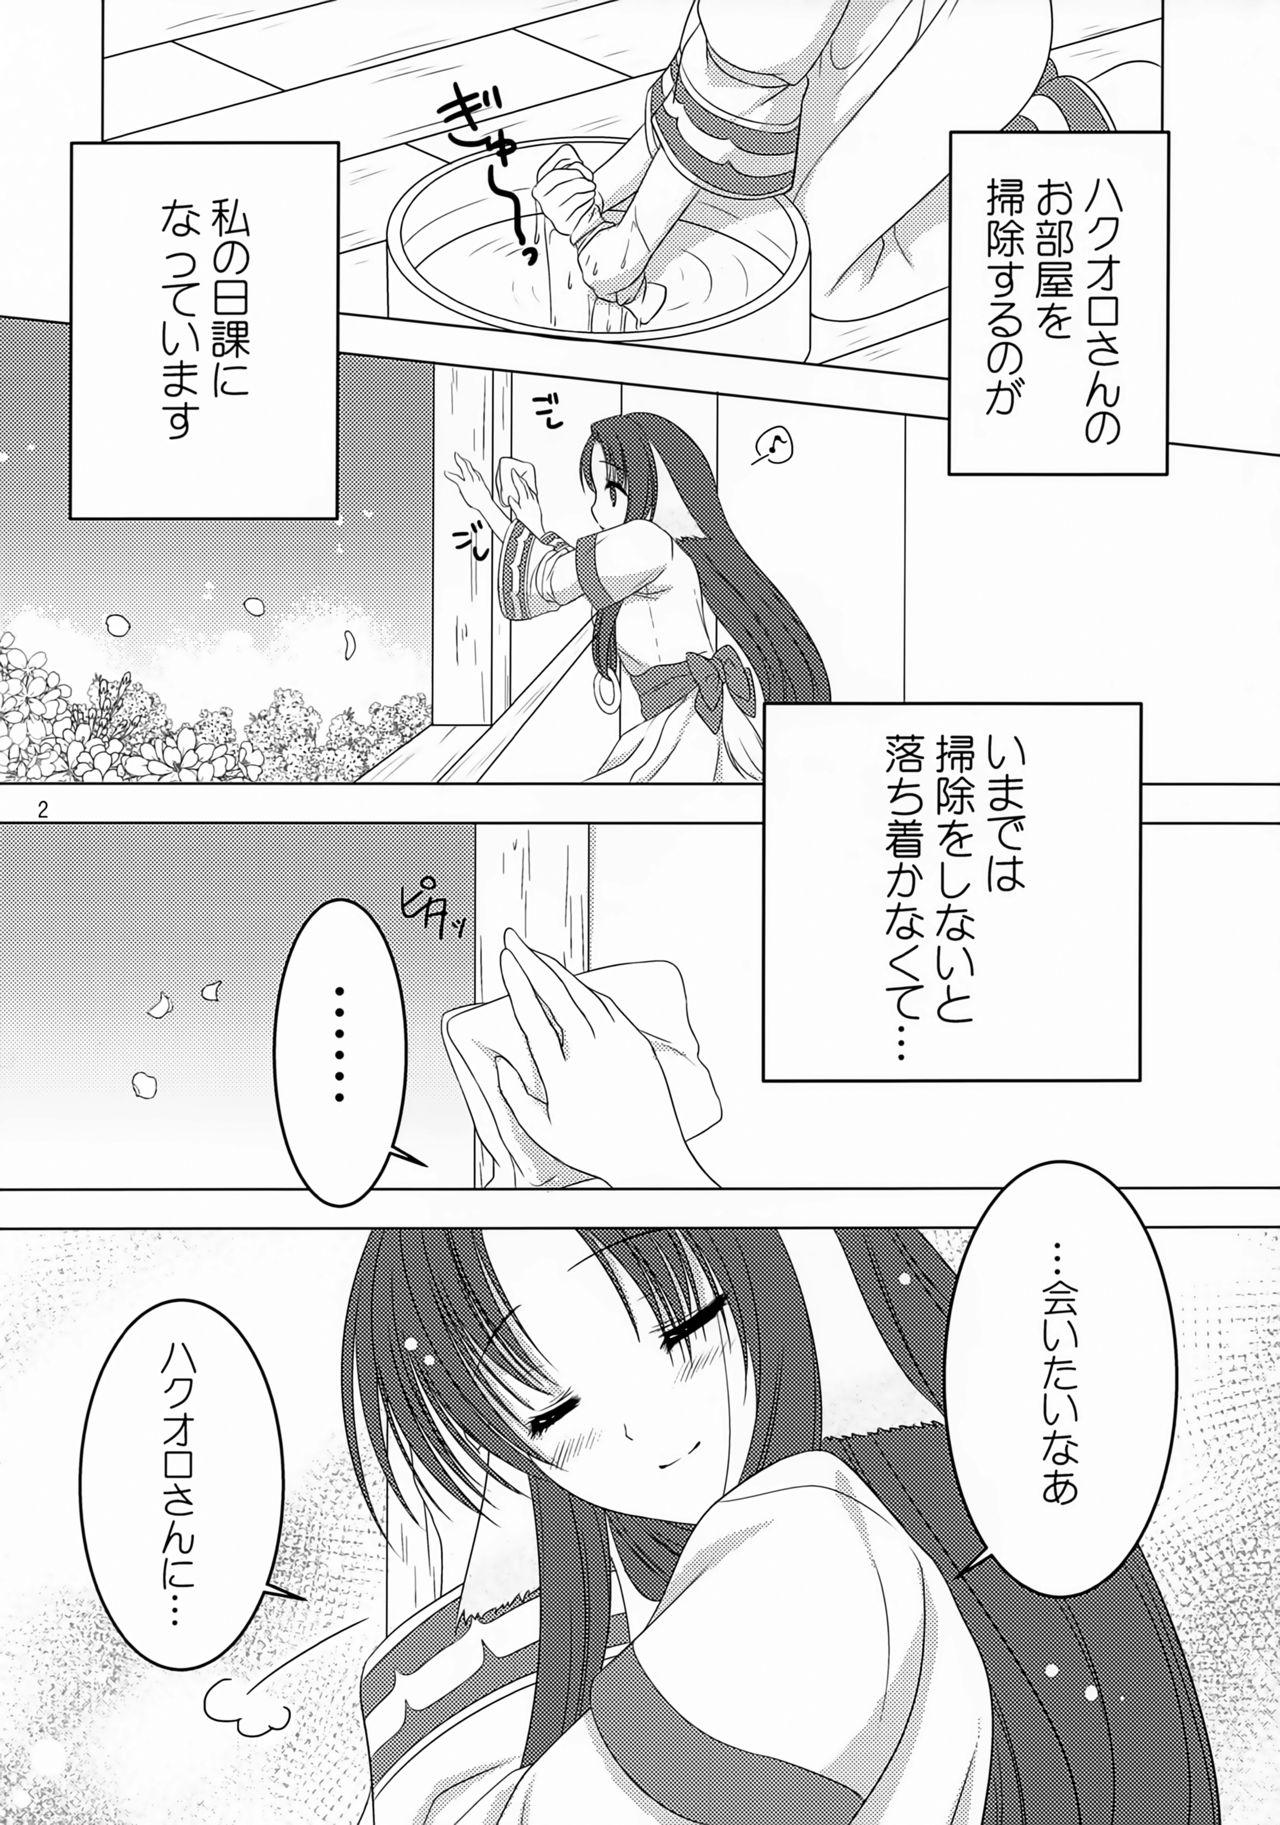 Bare Sakura no Koku - Utawarerumono People Having Sex - Page 3